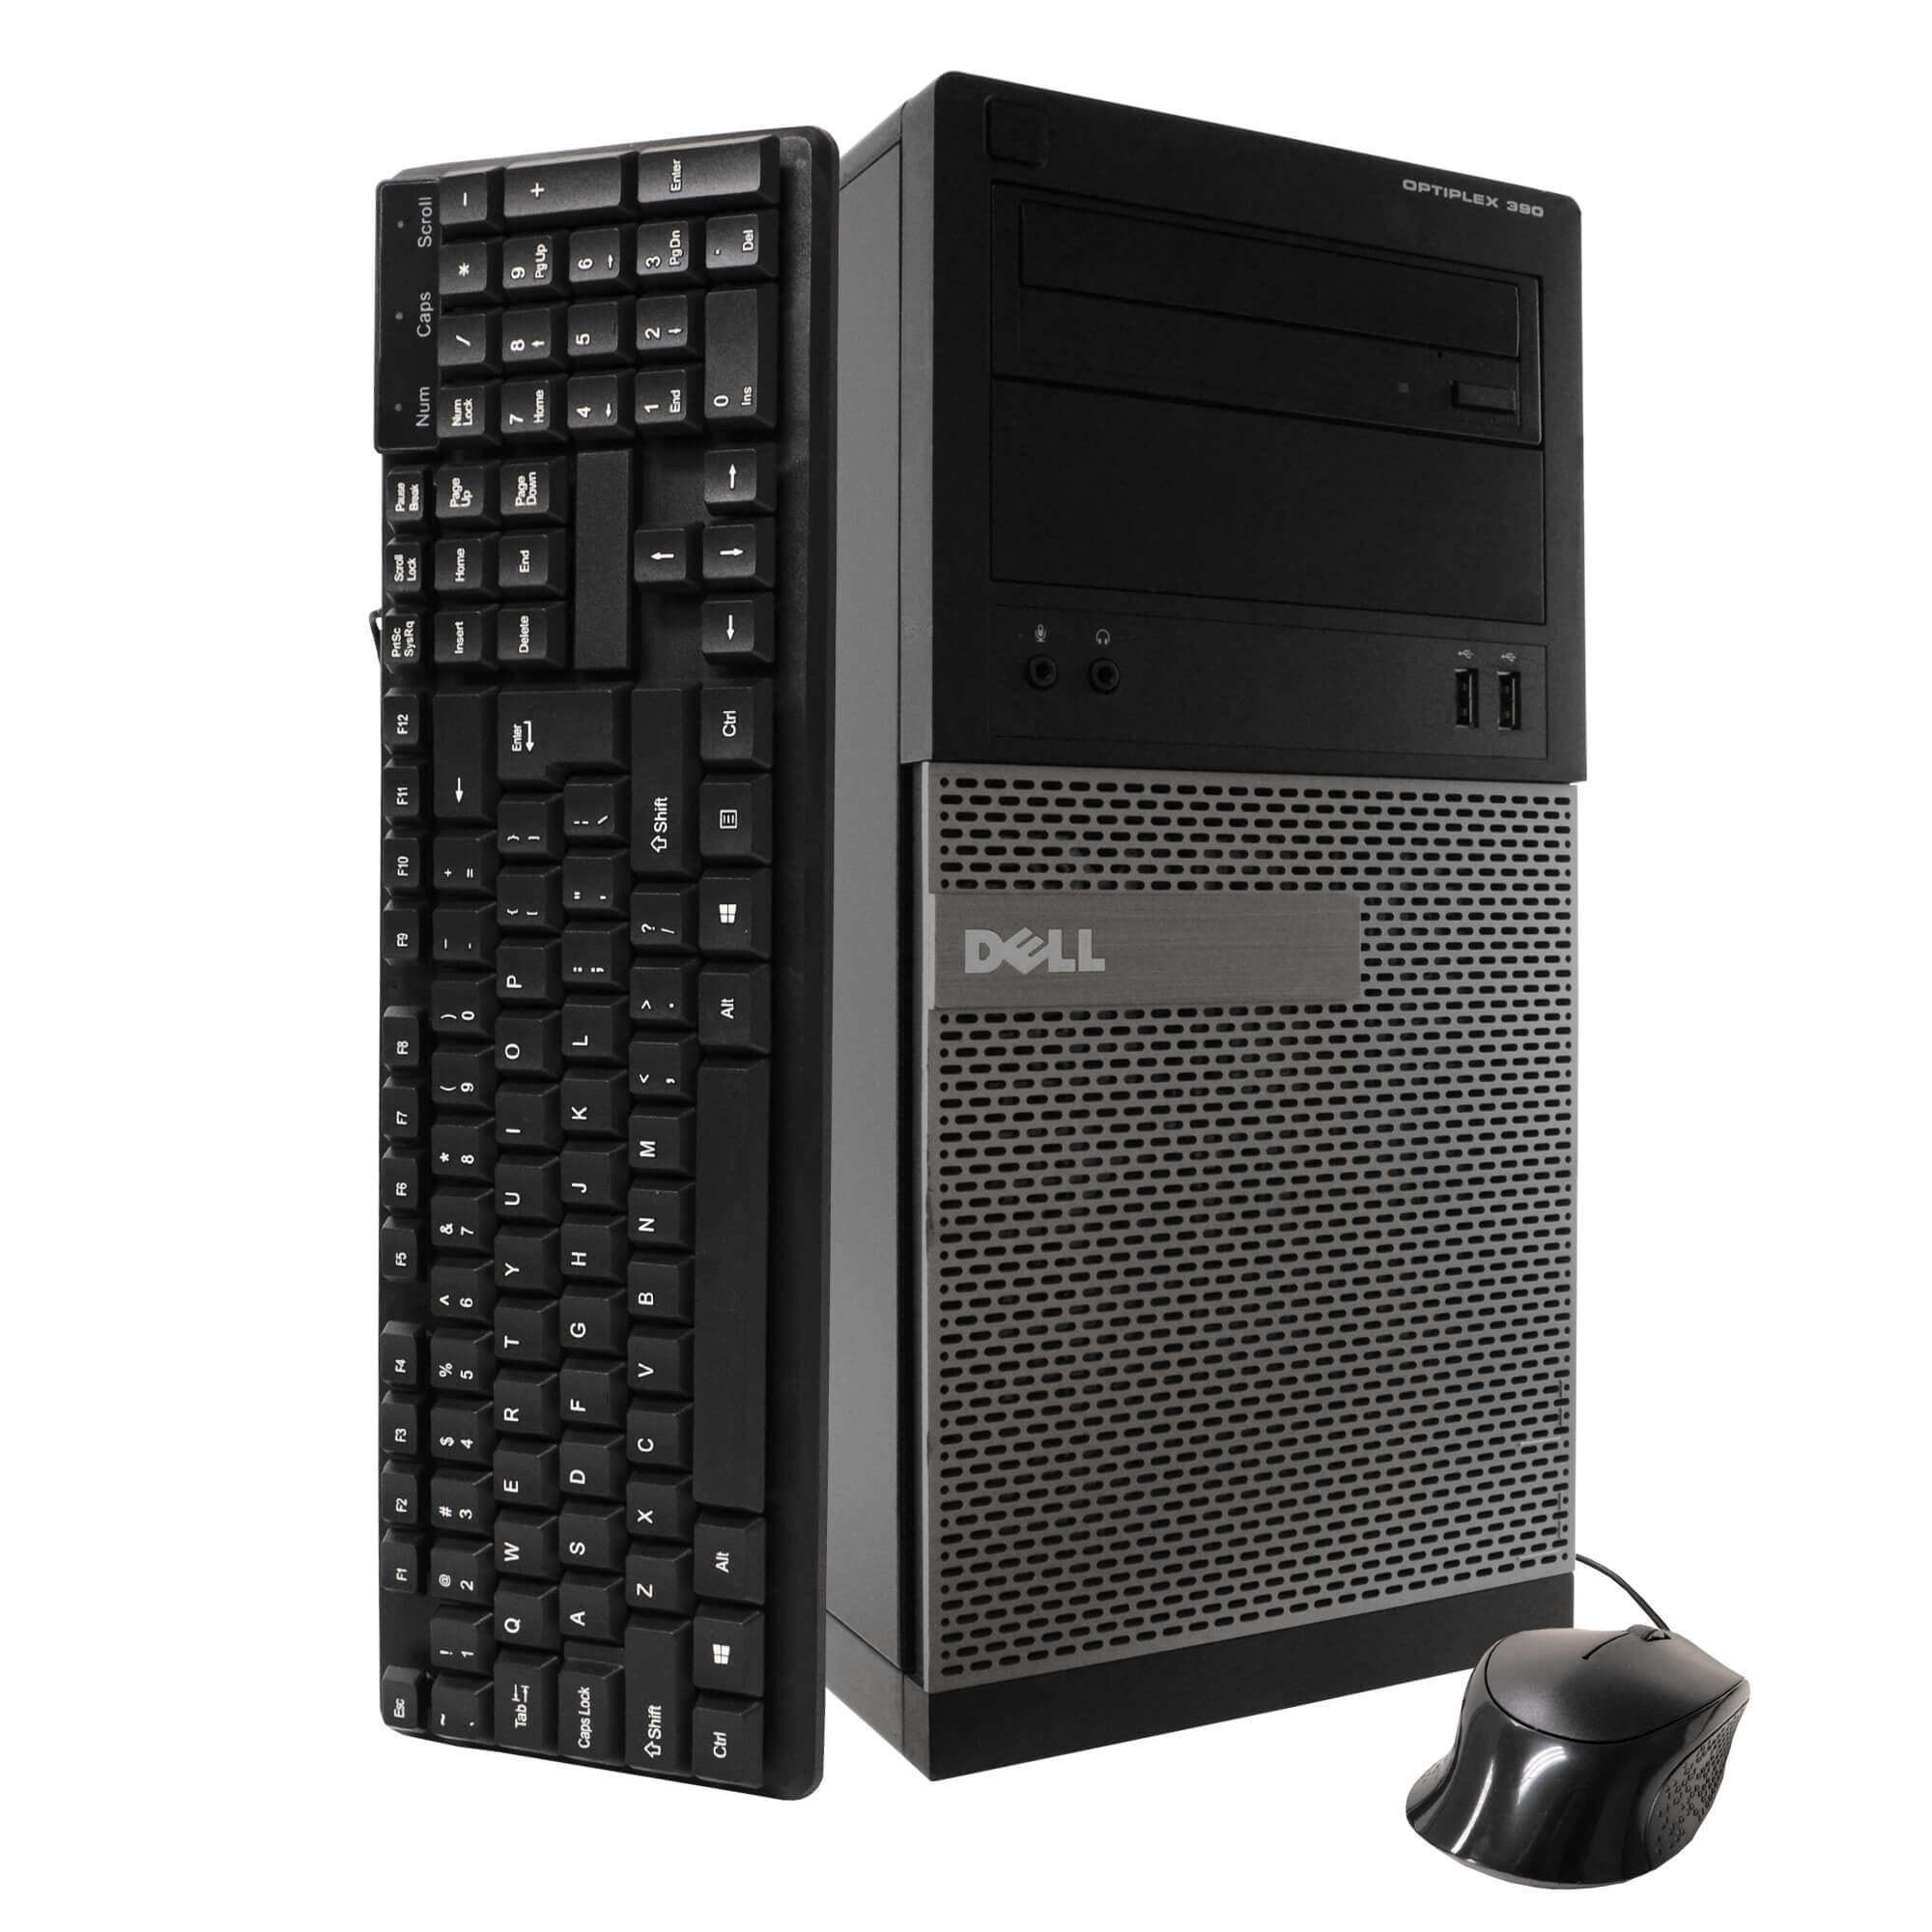 Dell 390 Tower PC, 3.2GHz Intel i5 Quad Core Gen 2, 4GB RAM, 250GB SATA HD, Windows 10 Home 64 bit, 22" Screen (Renewed)